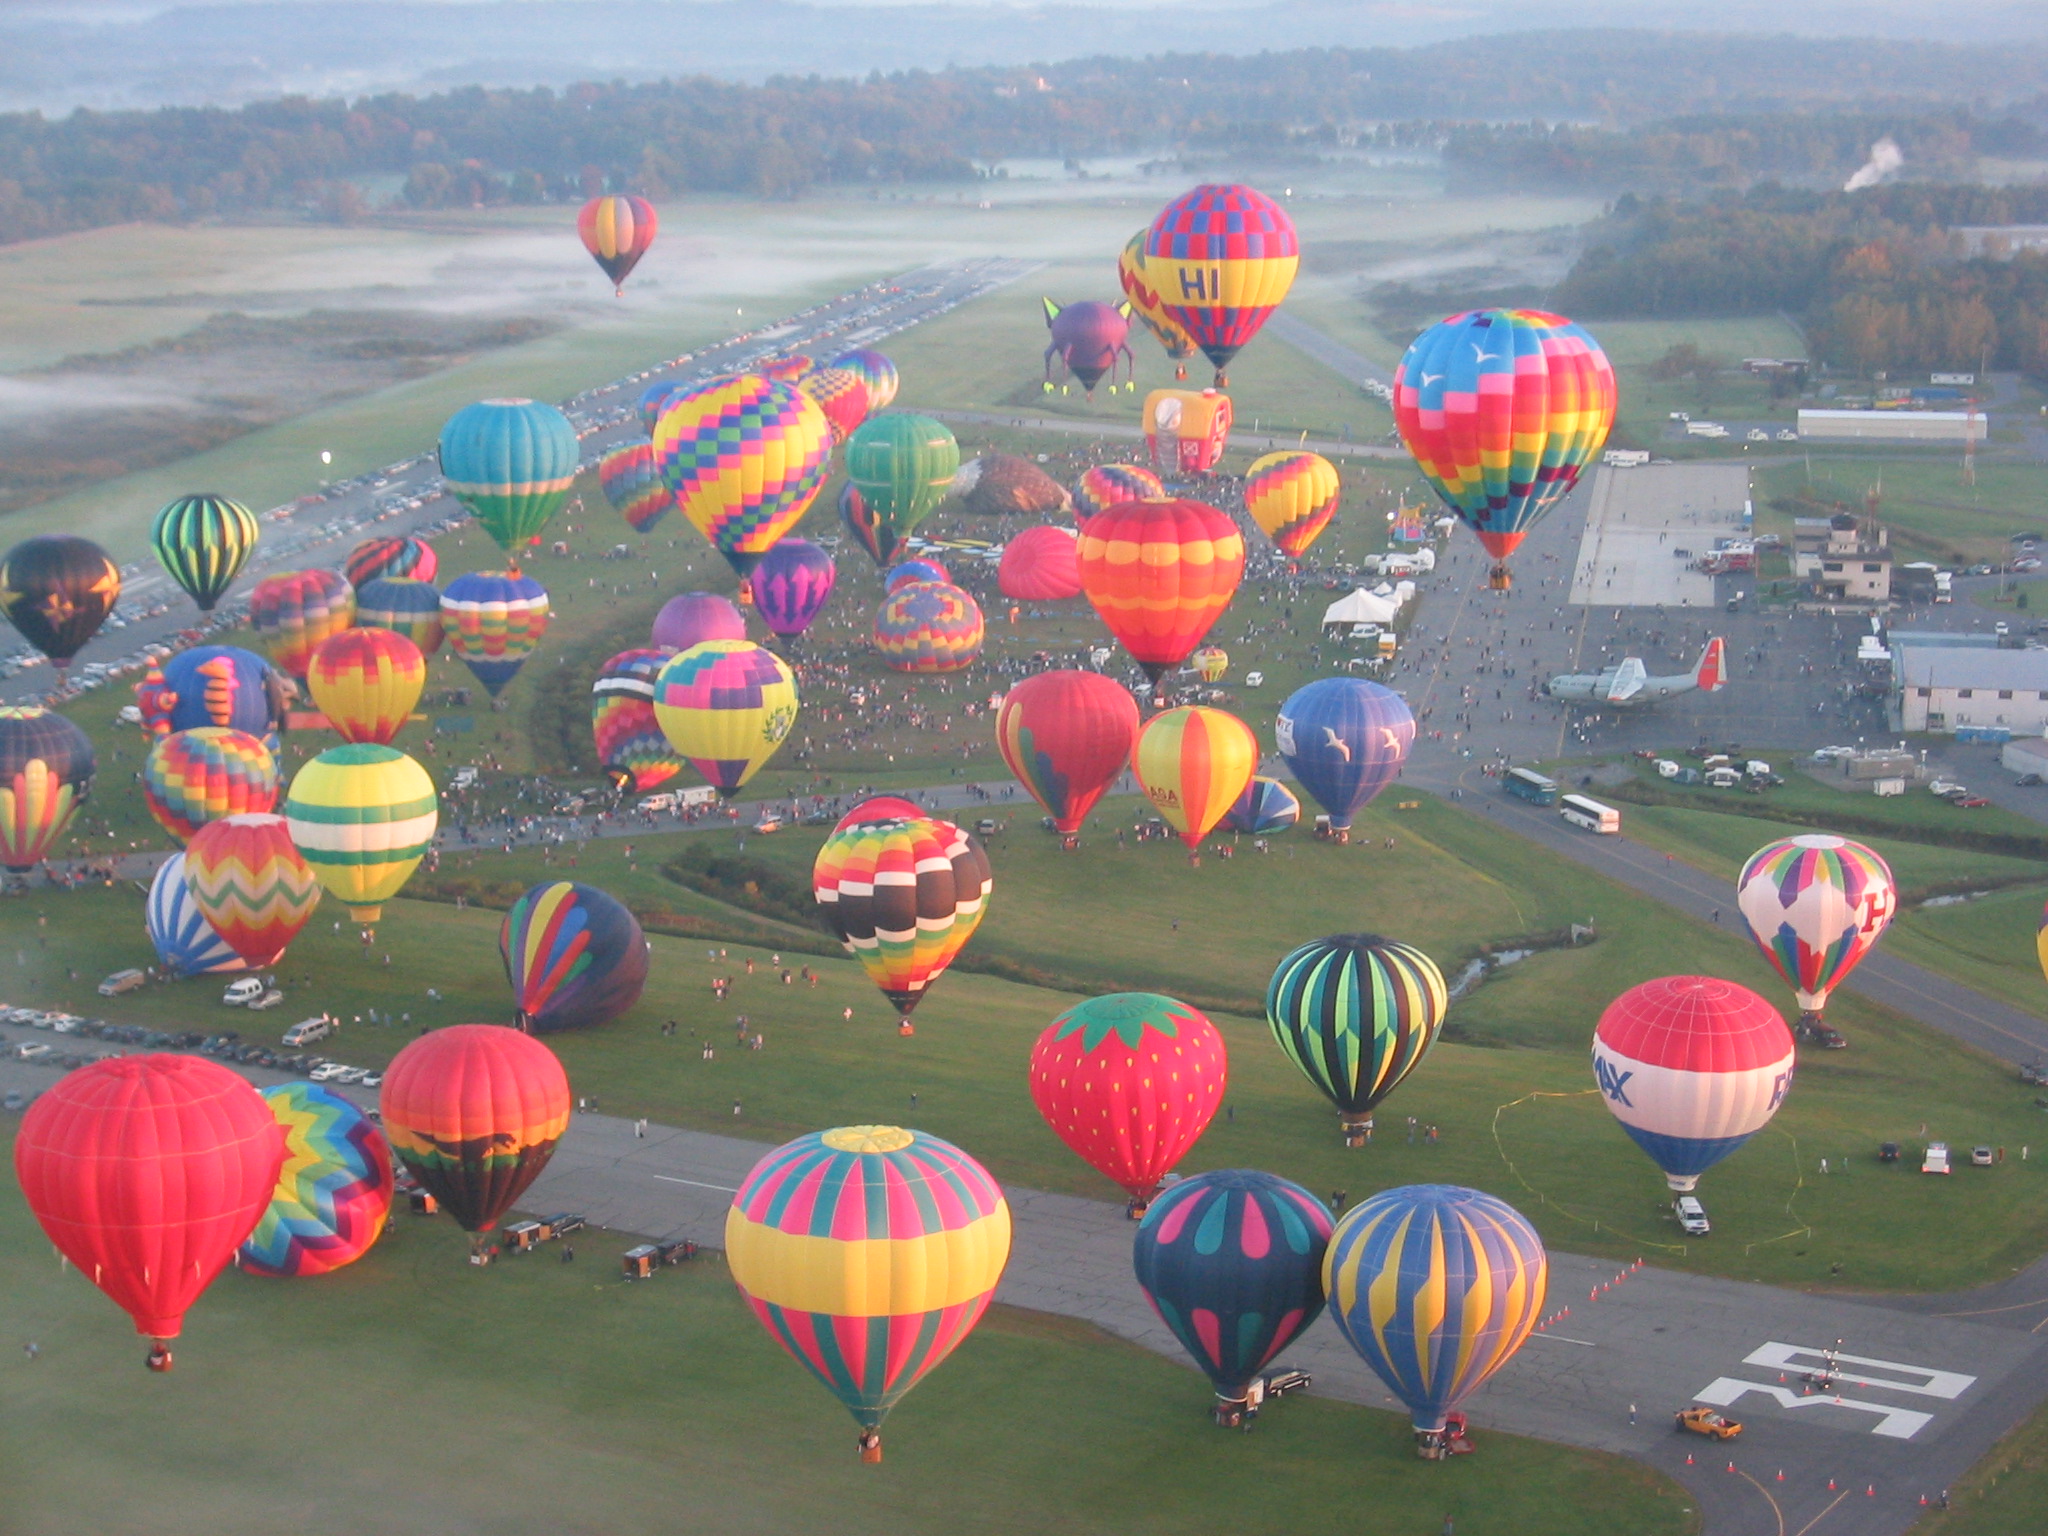 Hot air balloon festival in fall